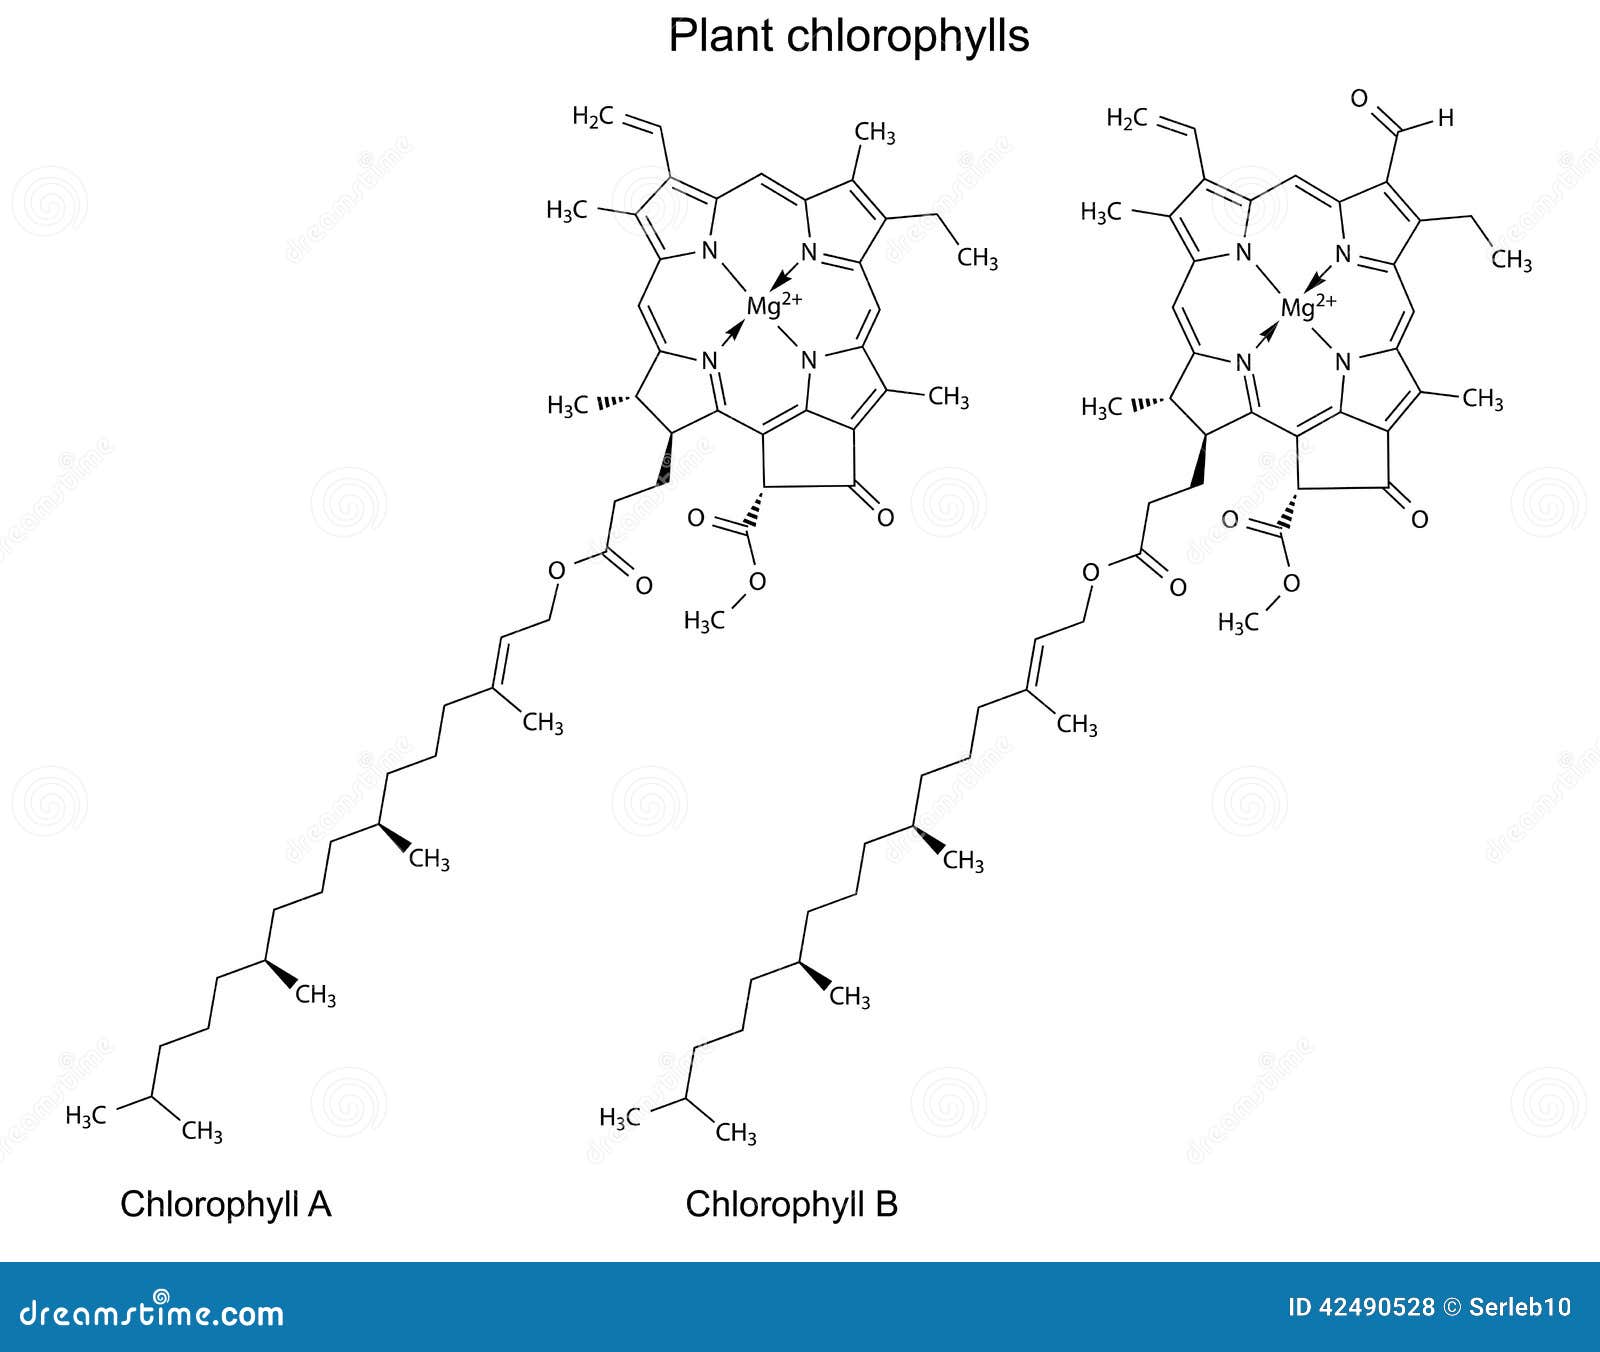 structural chemical formulas of plant chlorophylls